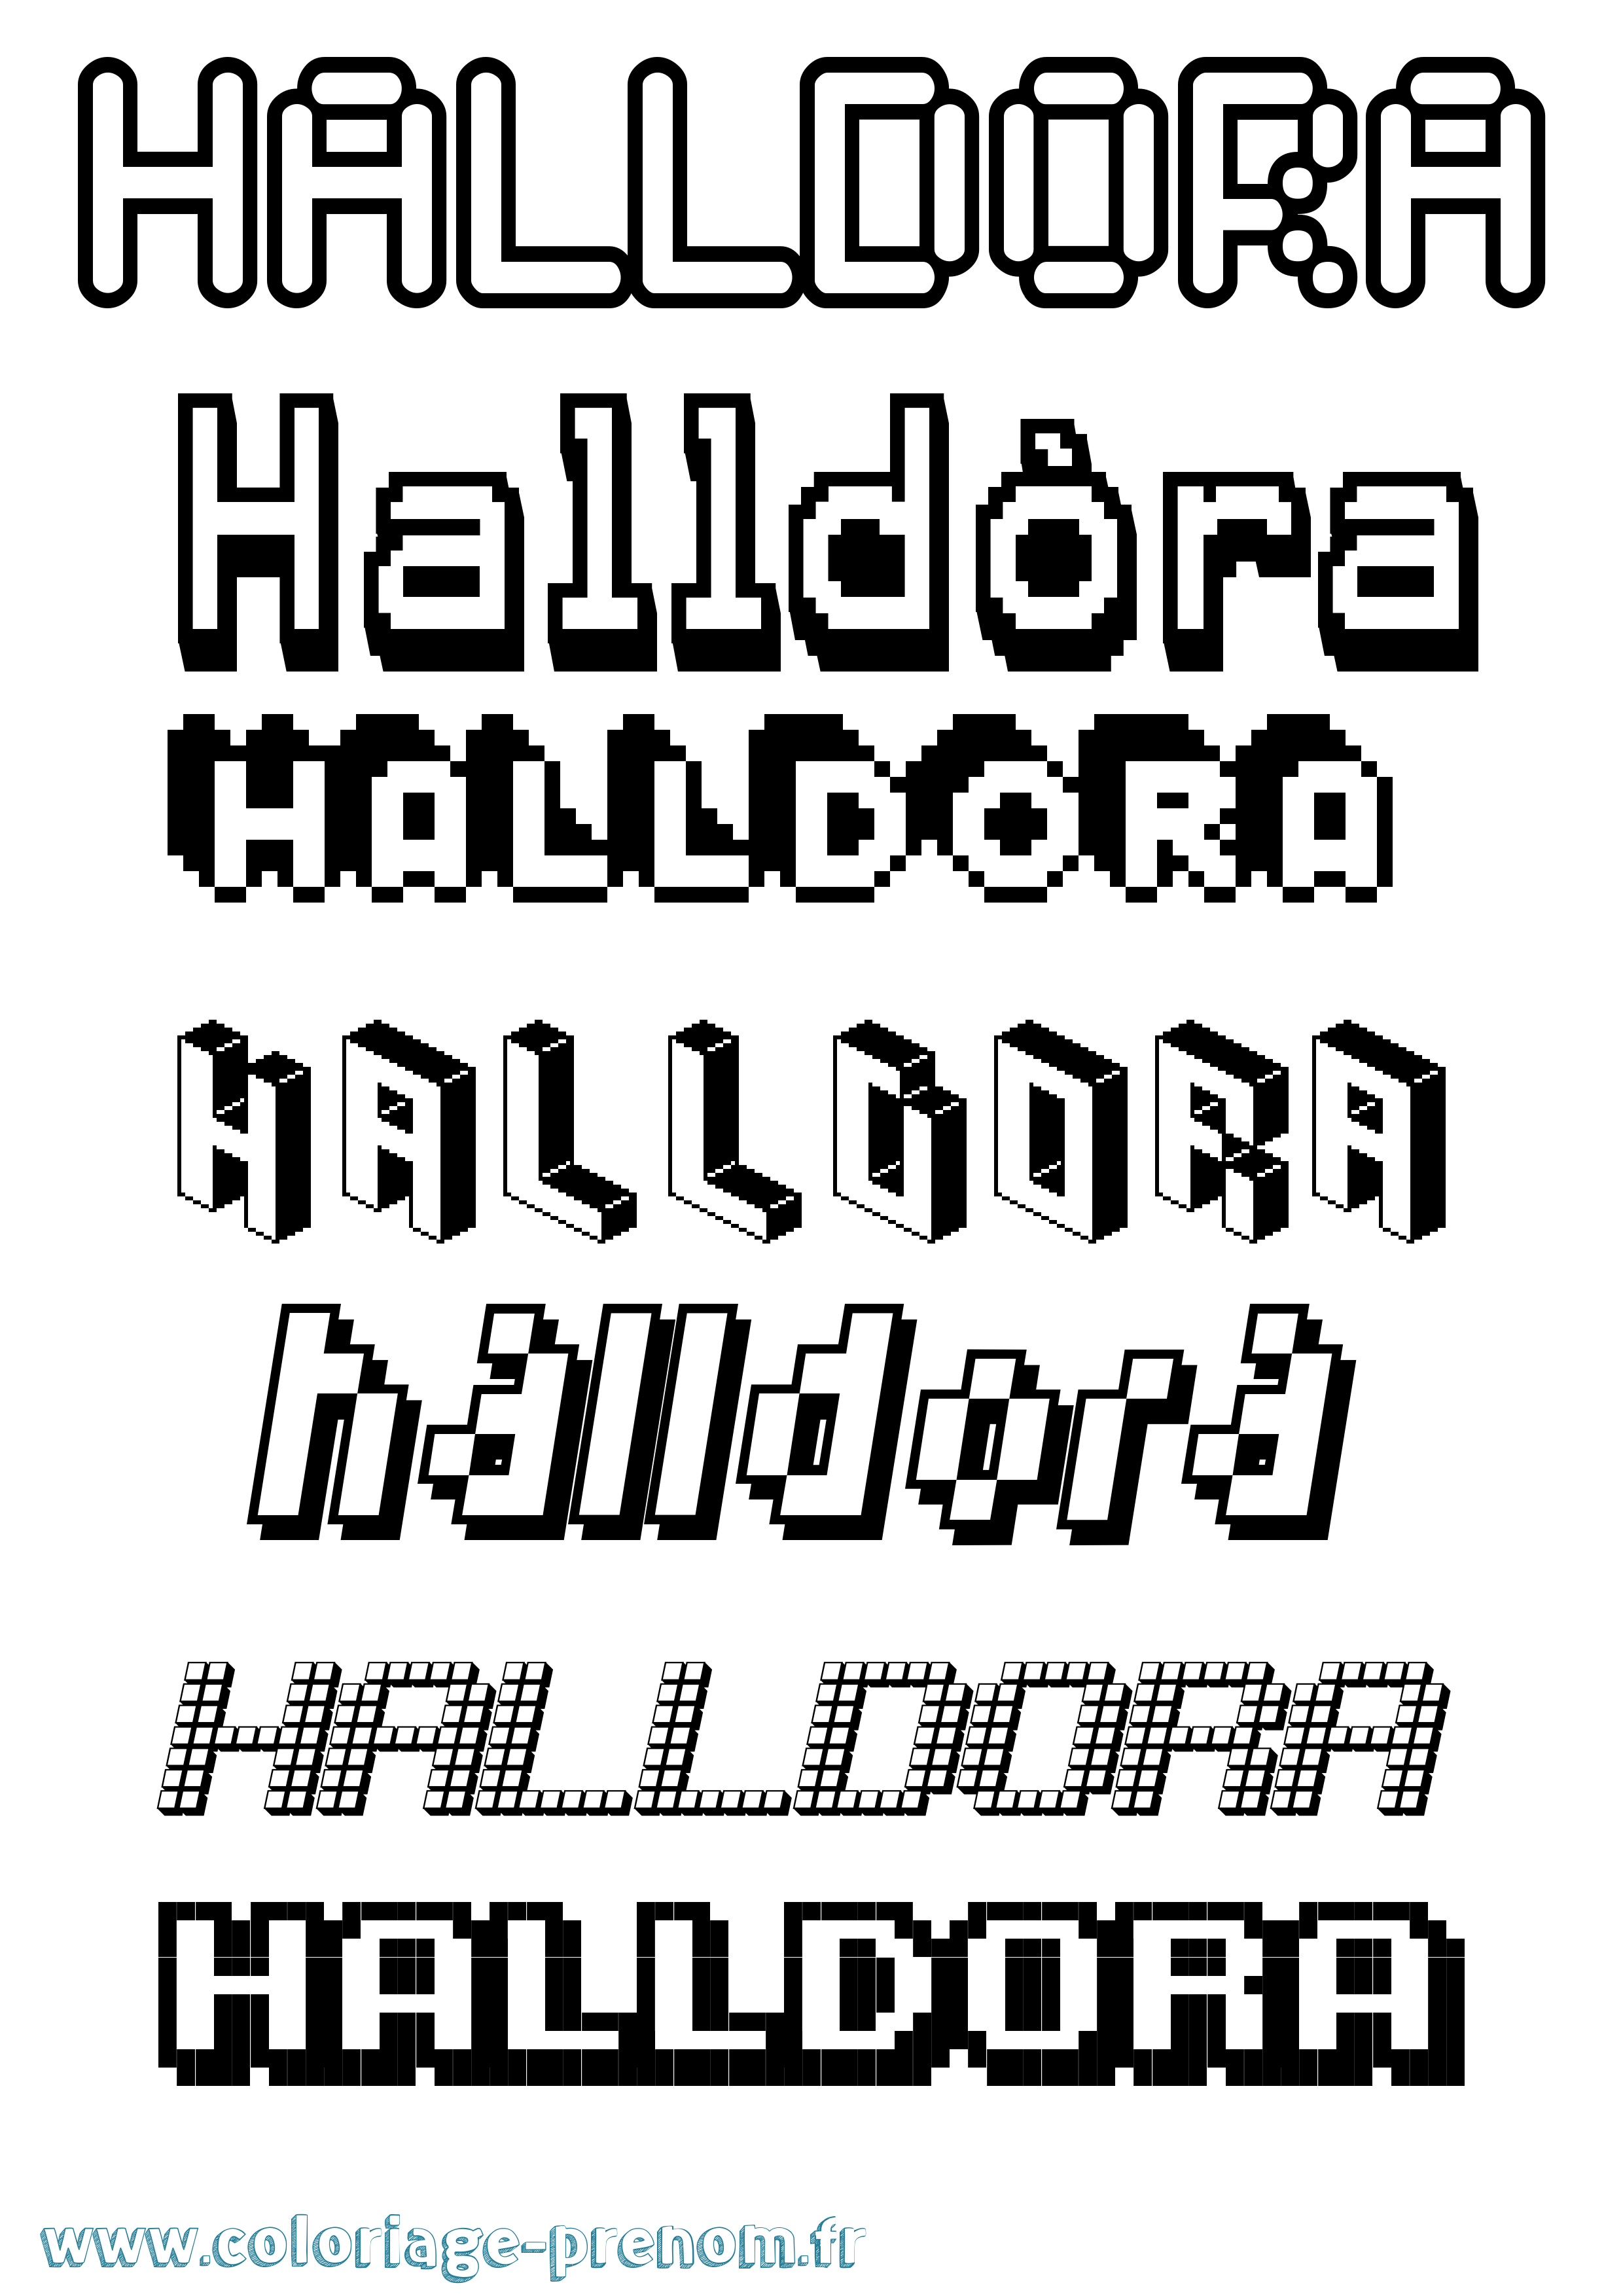 Coloriage prénom Halldóra Pixel